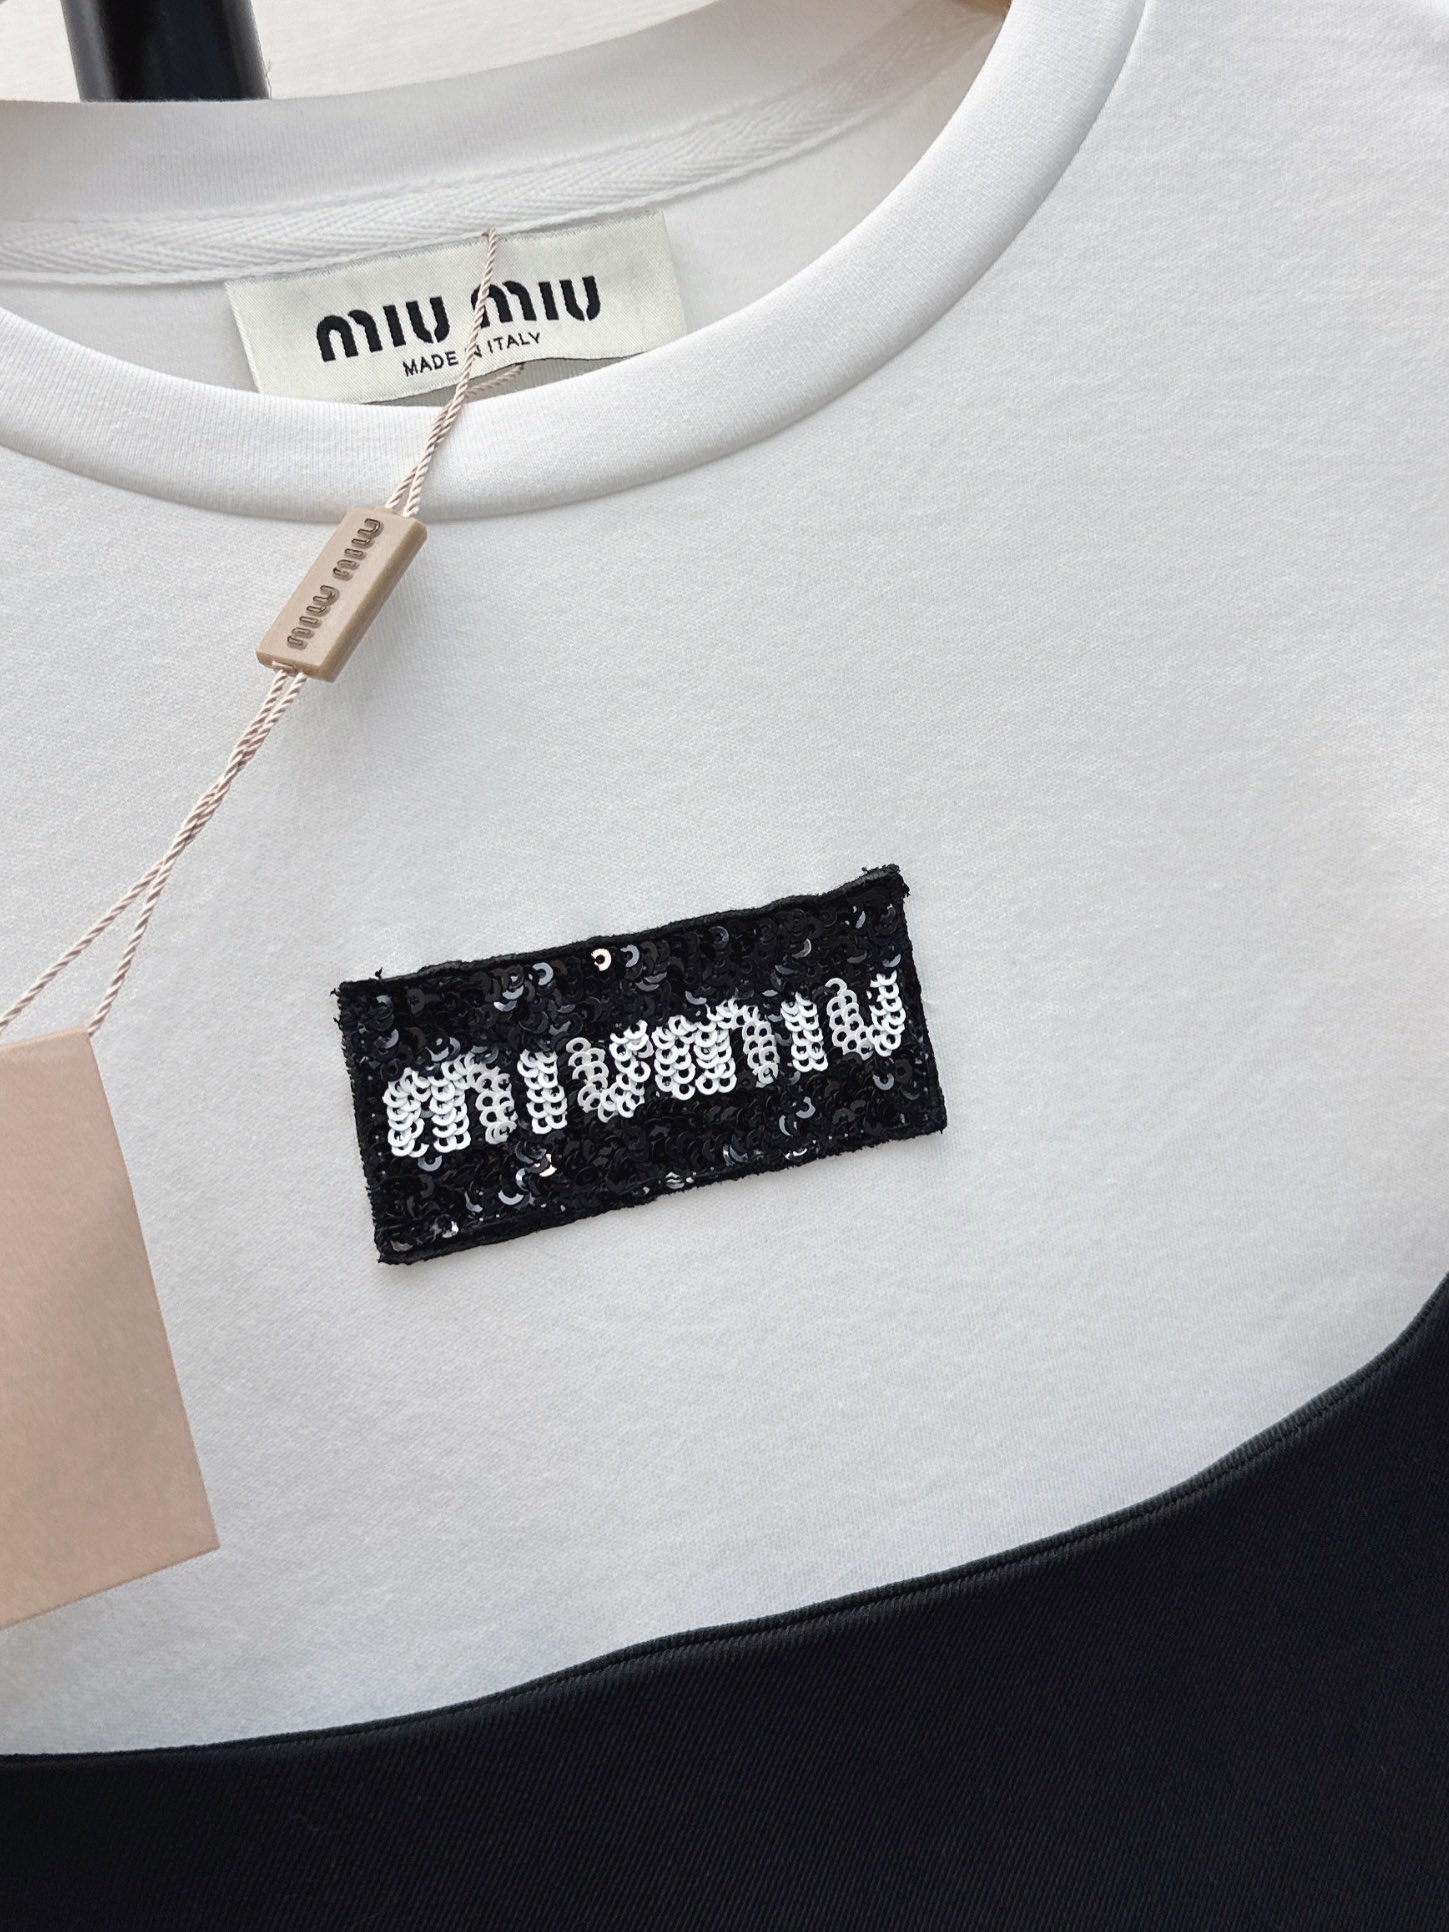 时髦感裙子Miu24Ss春夏最新款假两件拼接设计连衣裙时髦感在线经典黑白撞色假两件做法上身轻松减龄休闲显